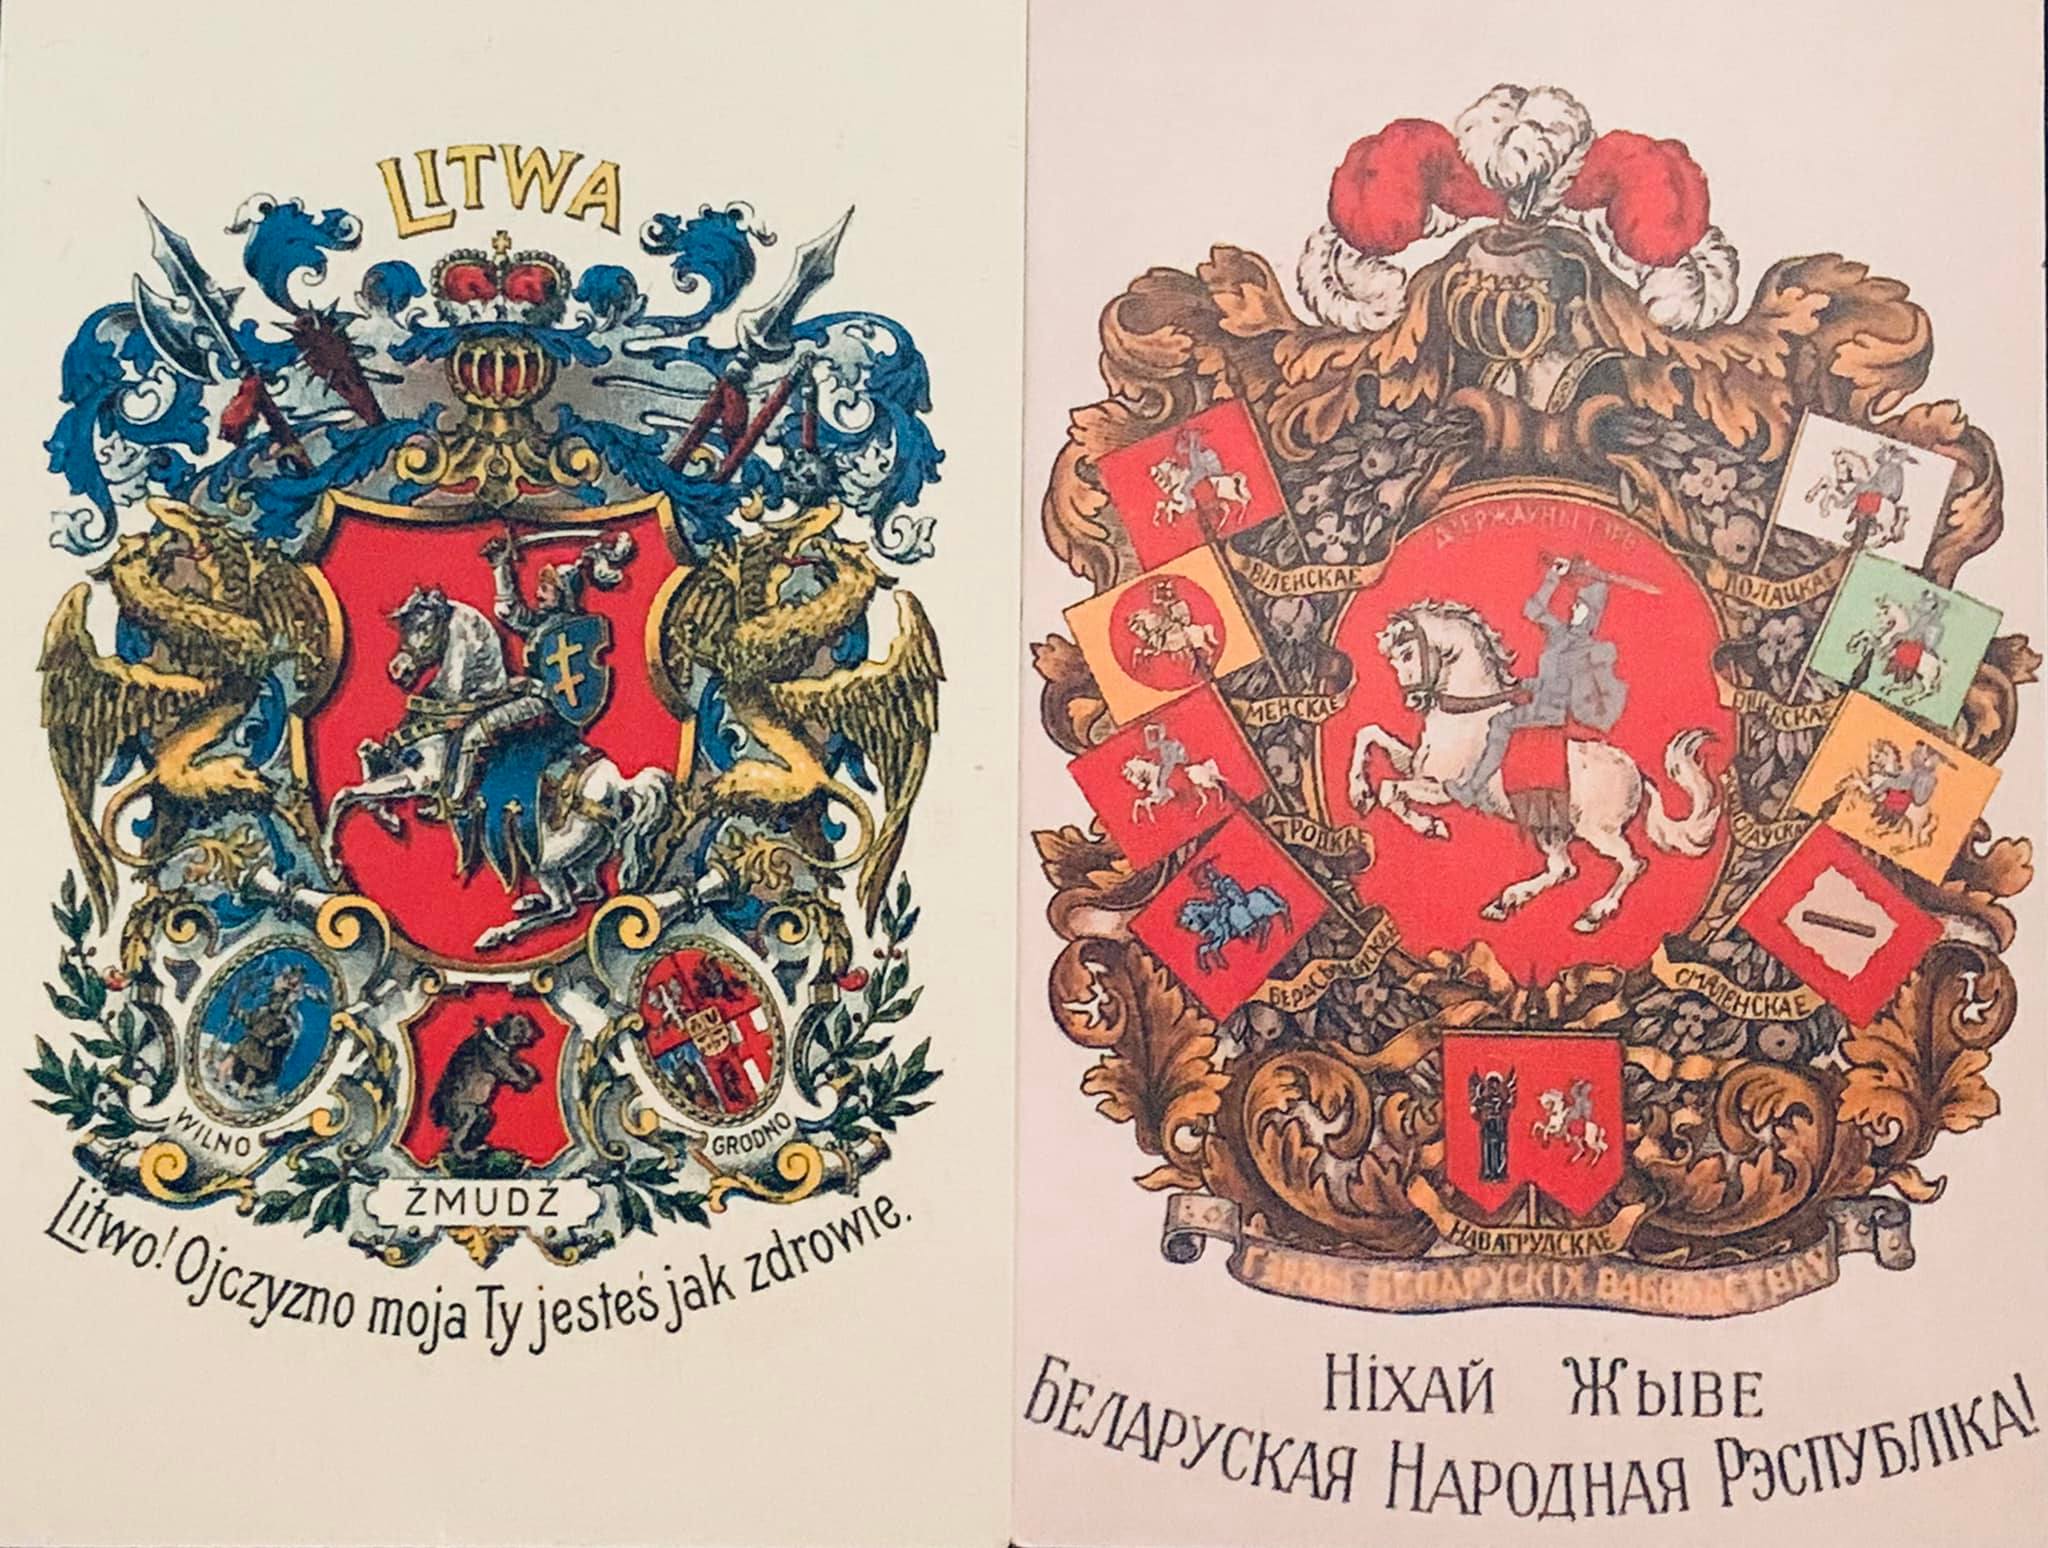 Lenkiškas ir baltarusiškas Lietuvos herbų plakatai.jpg